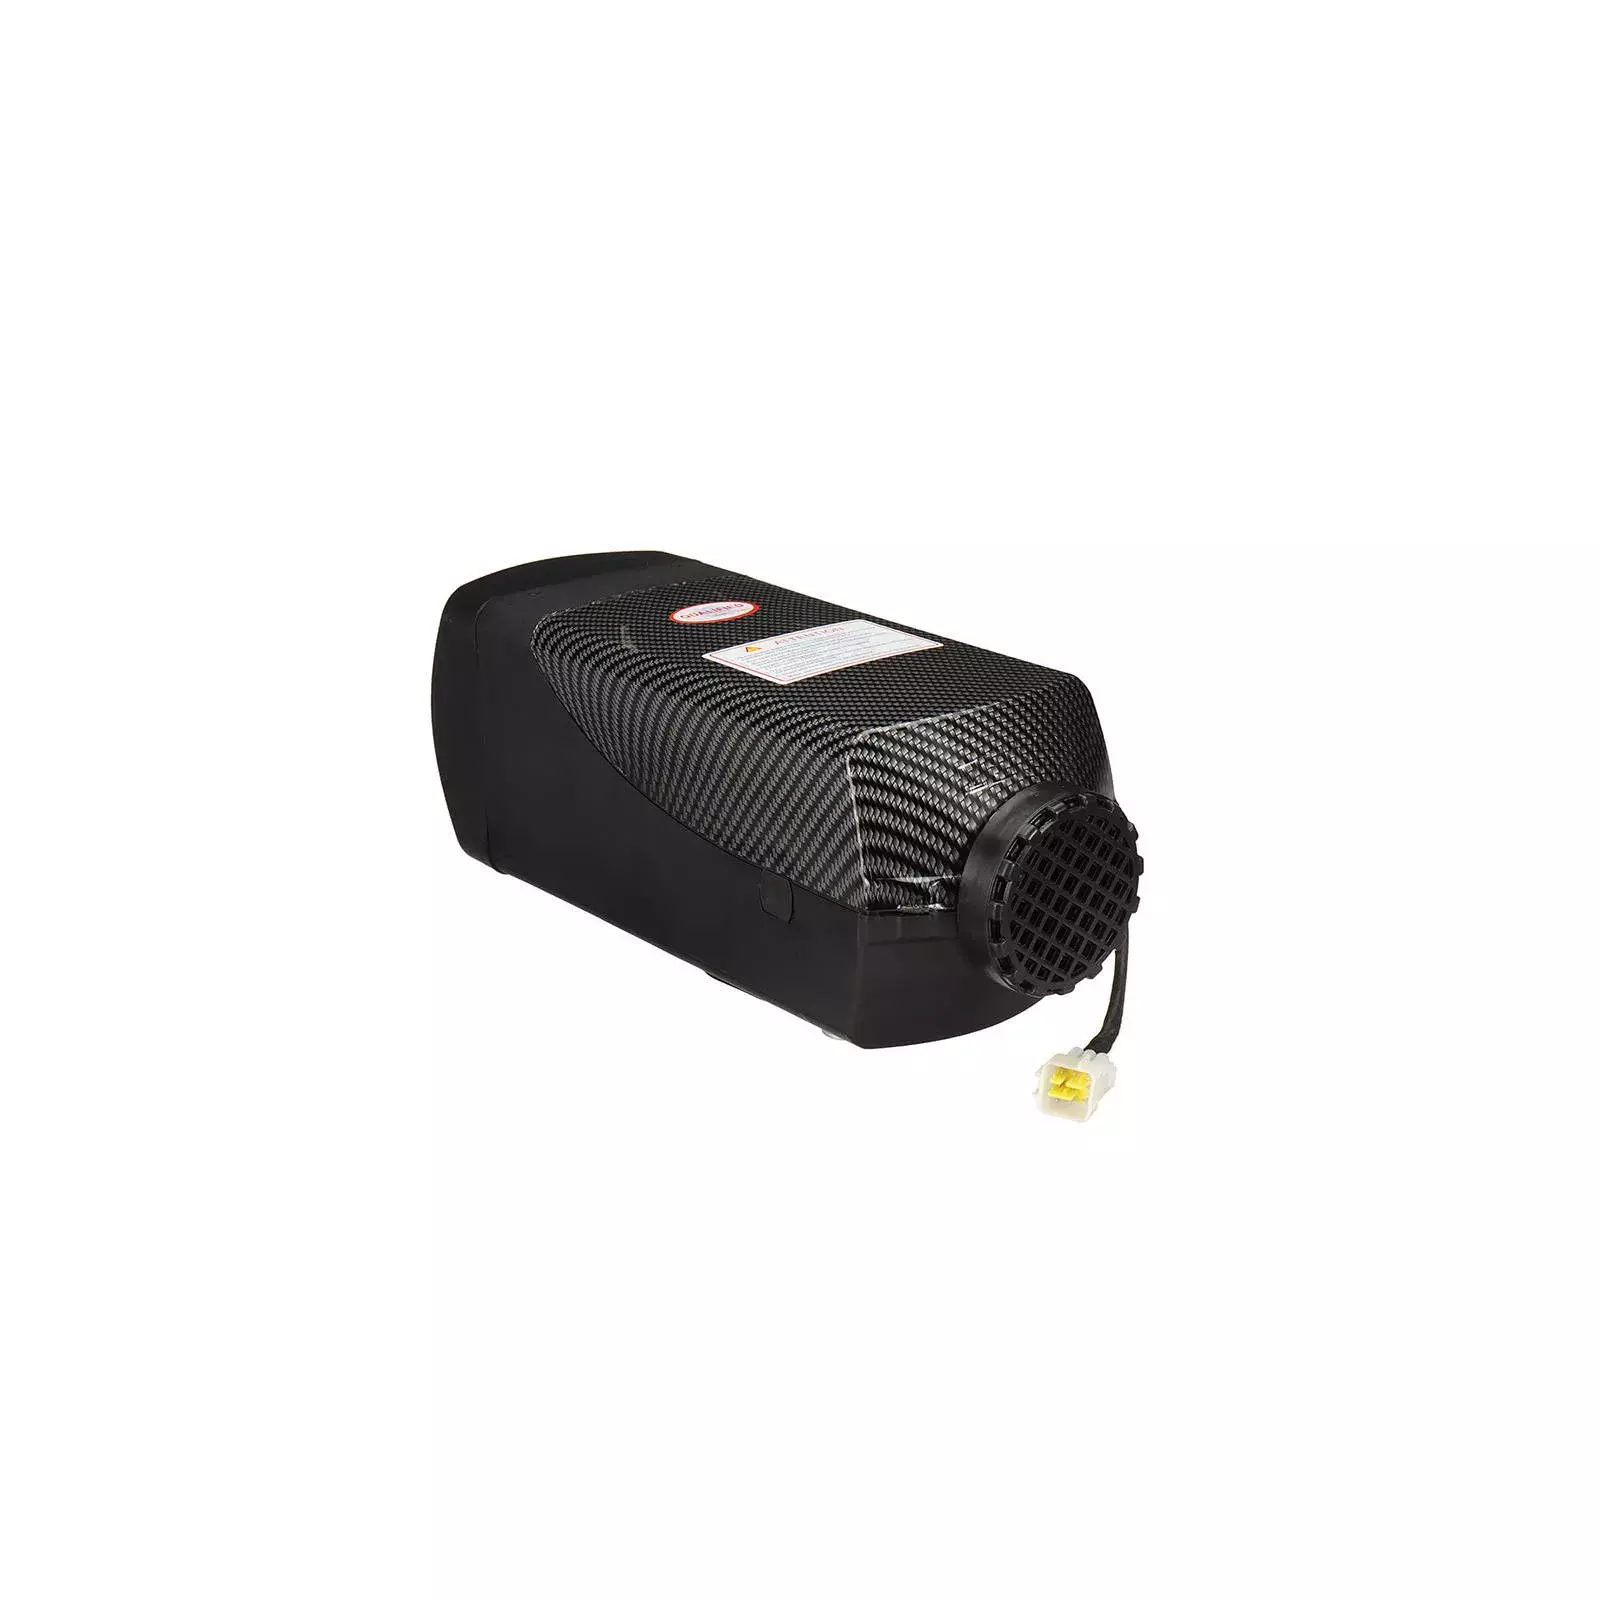 Parking heater HCALORY HC-A22, 8.5 HC-A22